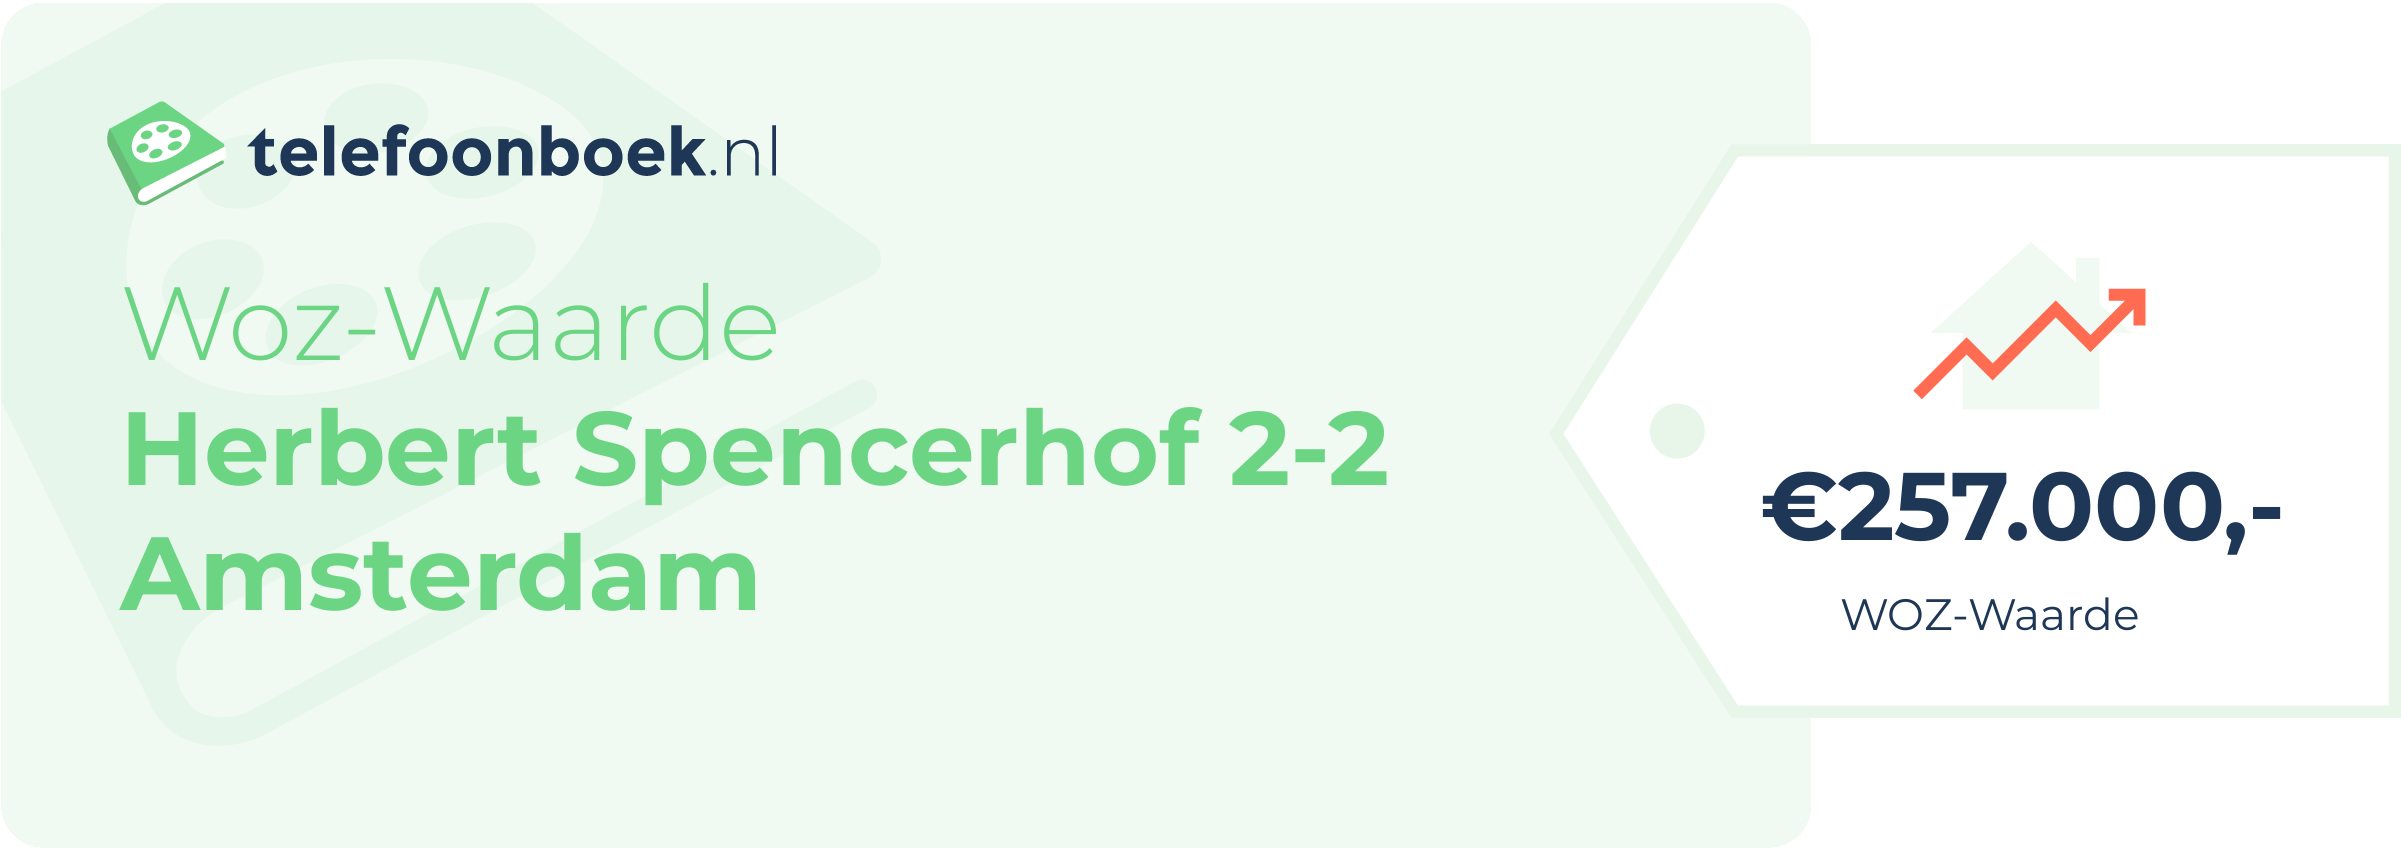 WOZ-waarde Herbert Spencerhof 2-2 Amsterdam